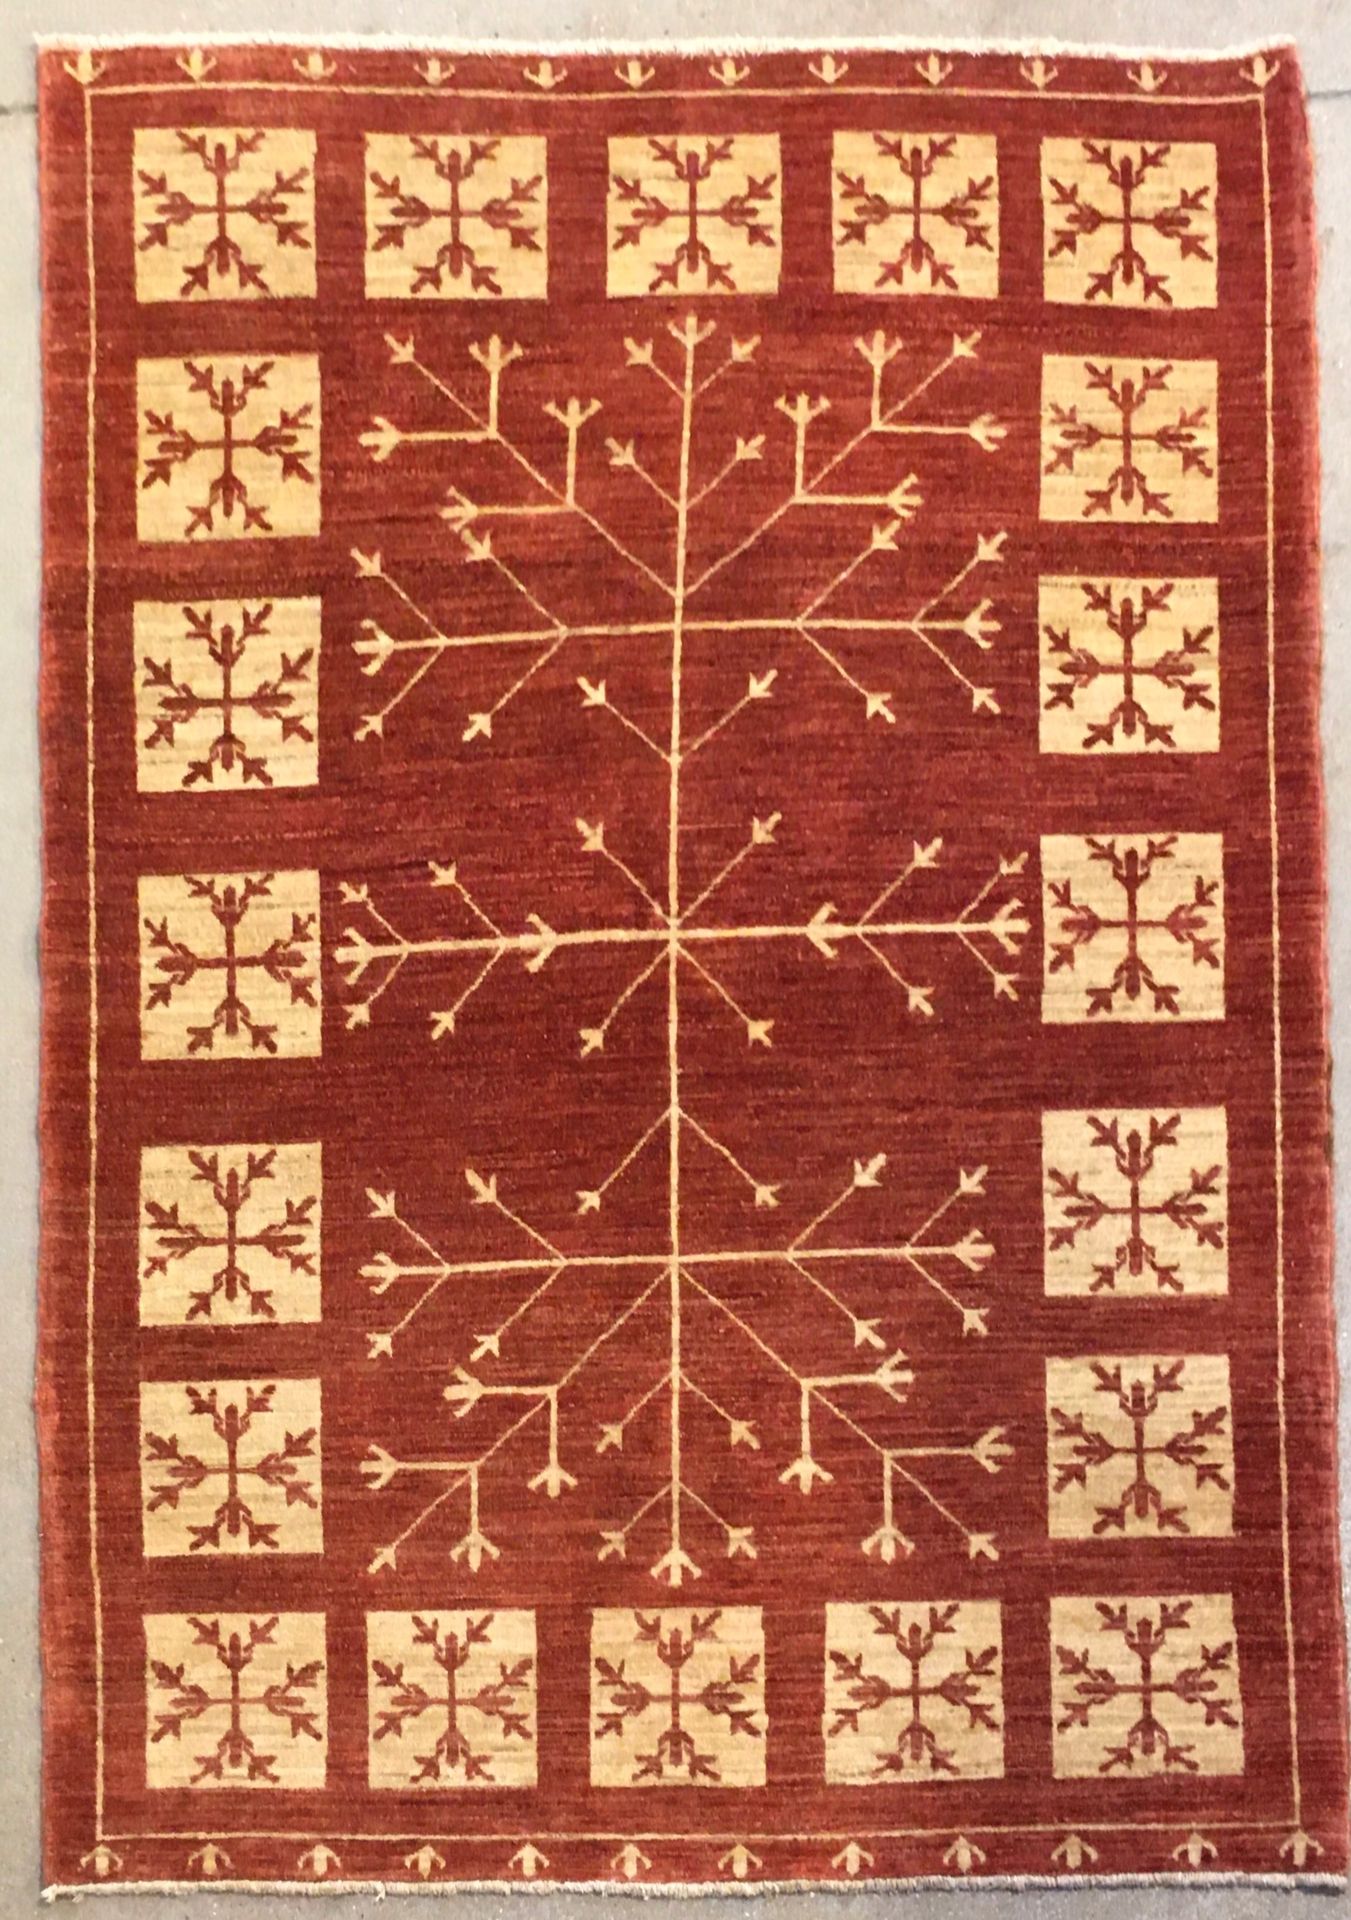 Null Shobi地毯，纬线和经线为棉，羊毛绒，橙色砖背景，图案为玉米穗，装饰有希腊十字架。尺寸：1.95 X 1.51米